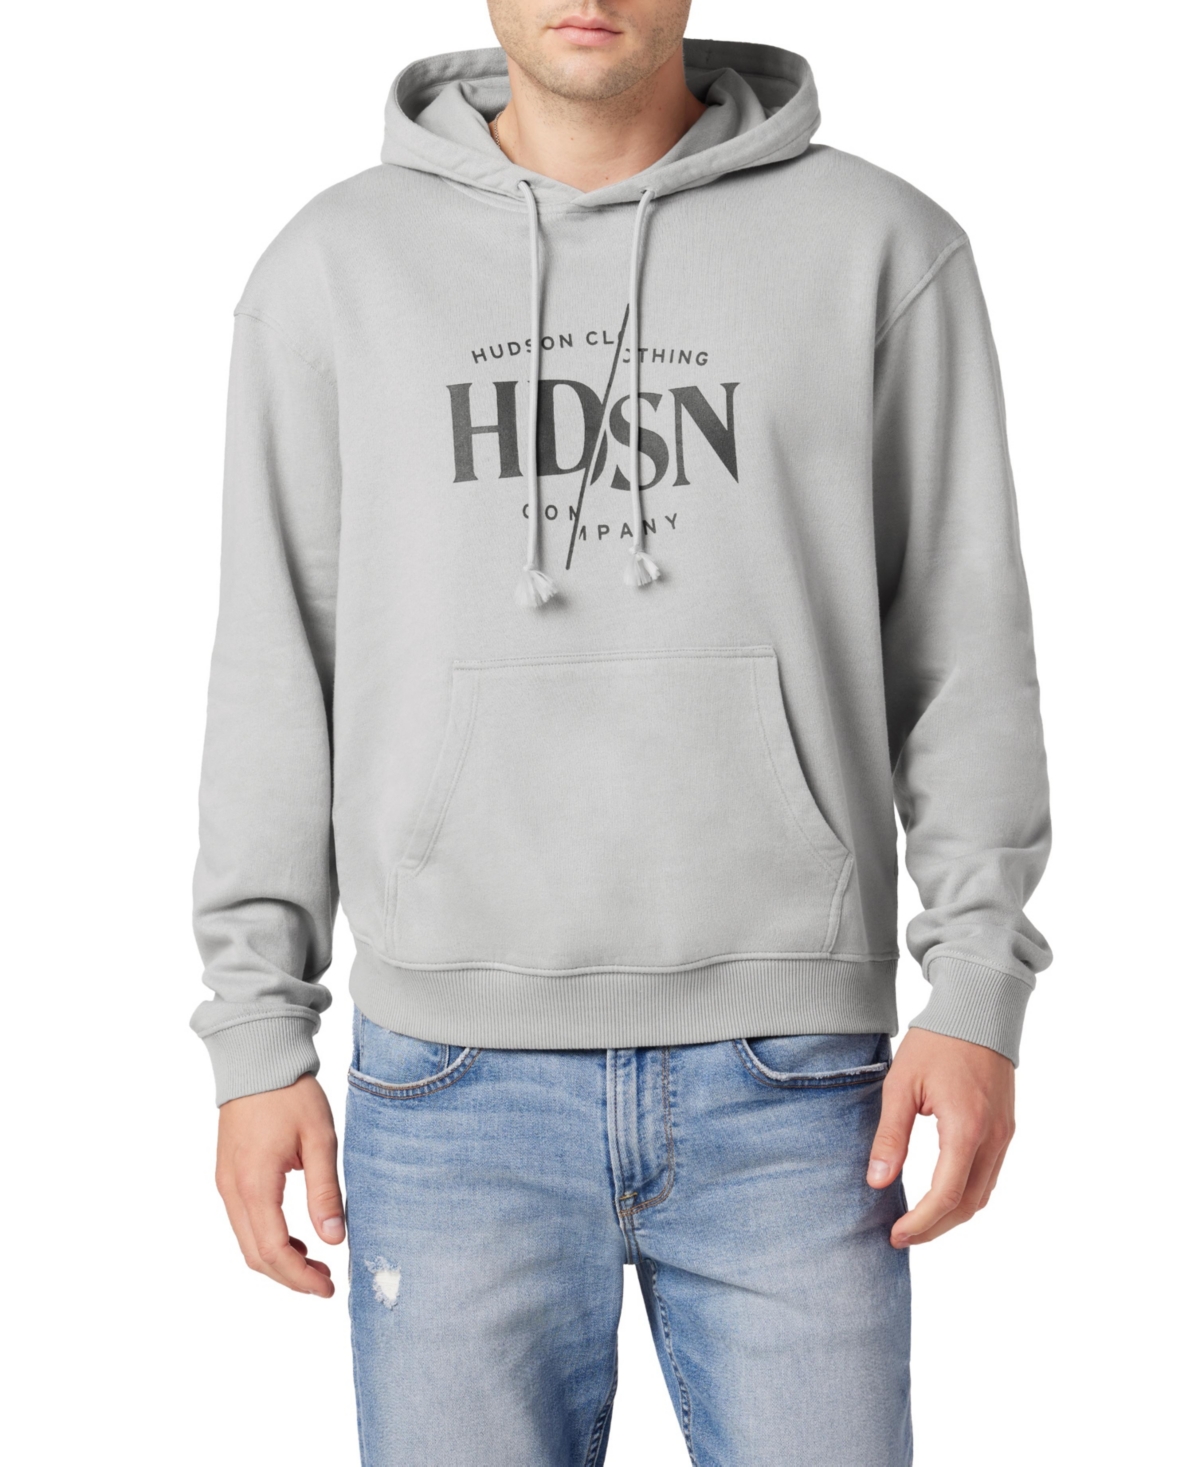 Hdsn Men's Hoodie Sweatshirt In Gray